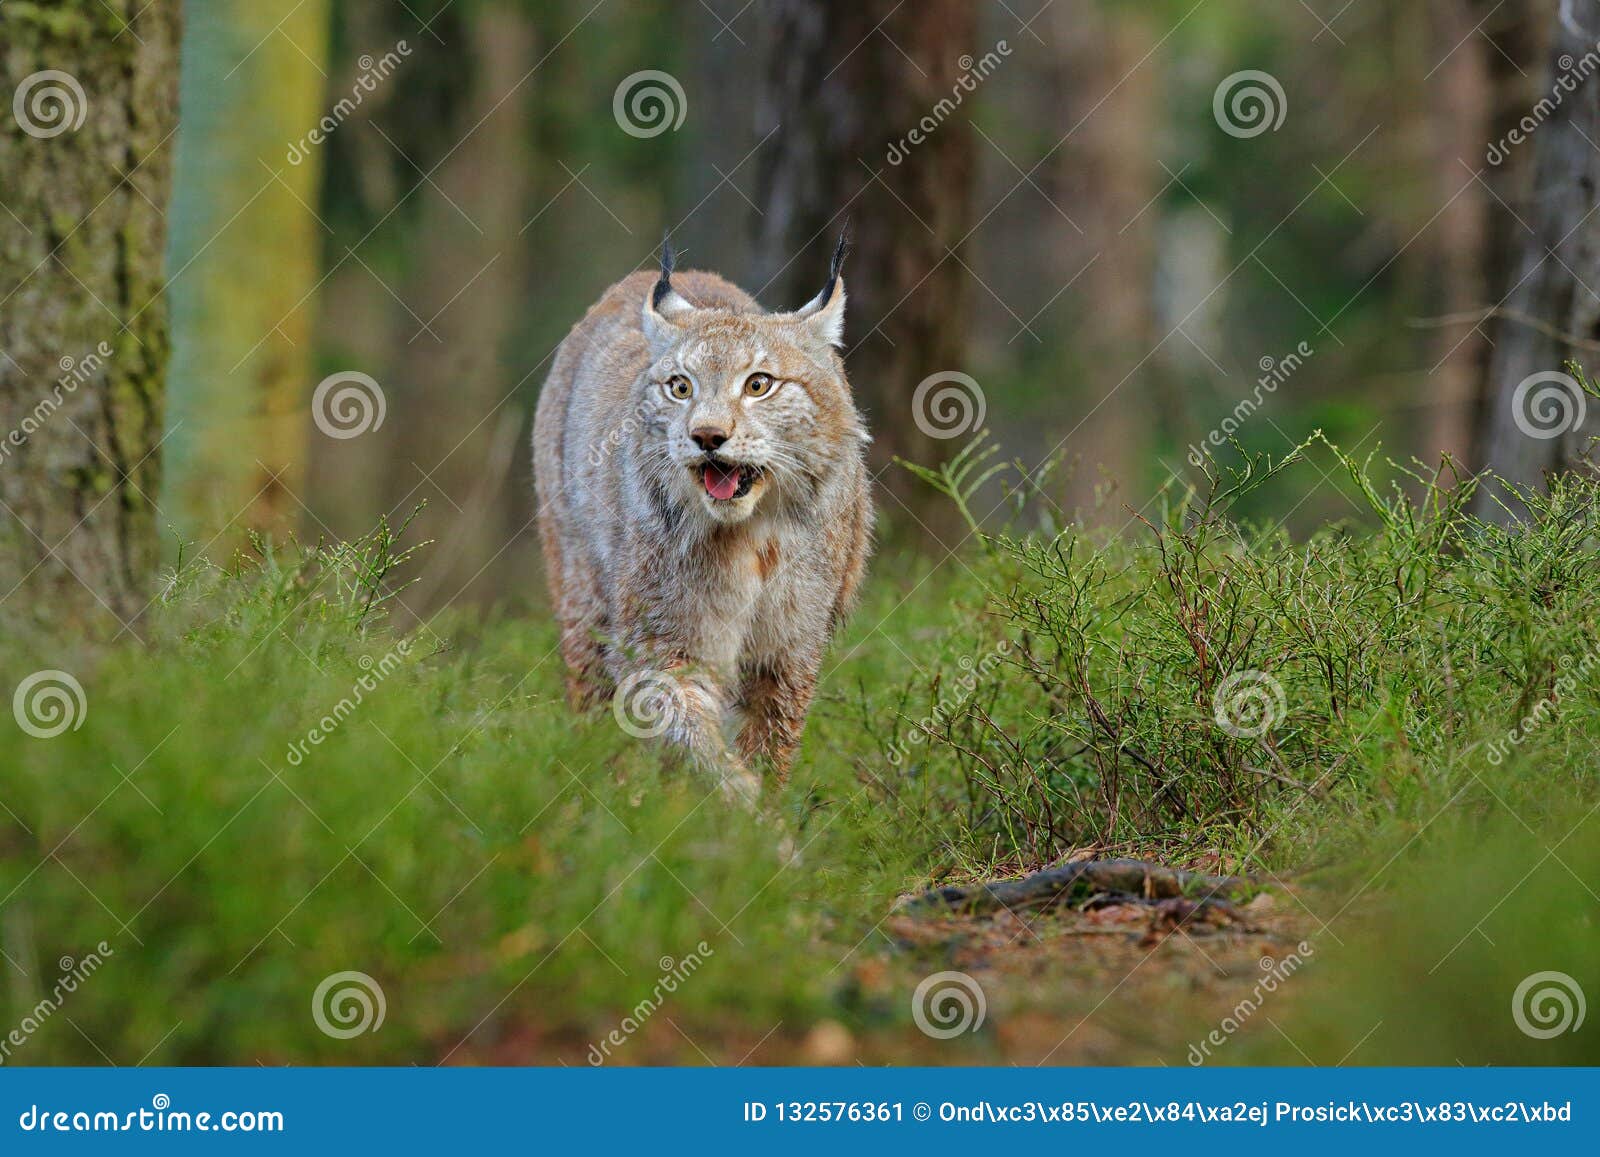 Lynx in Green Forest. Wildlife Scene from Nature. Walking Eurasian Lynx ...